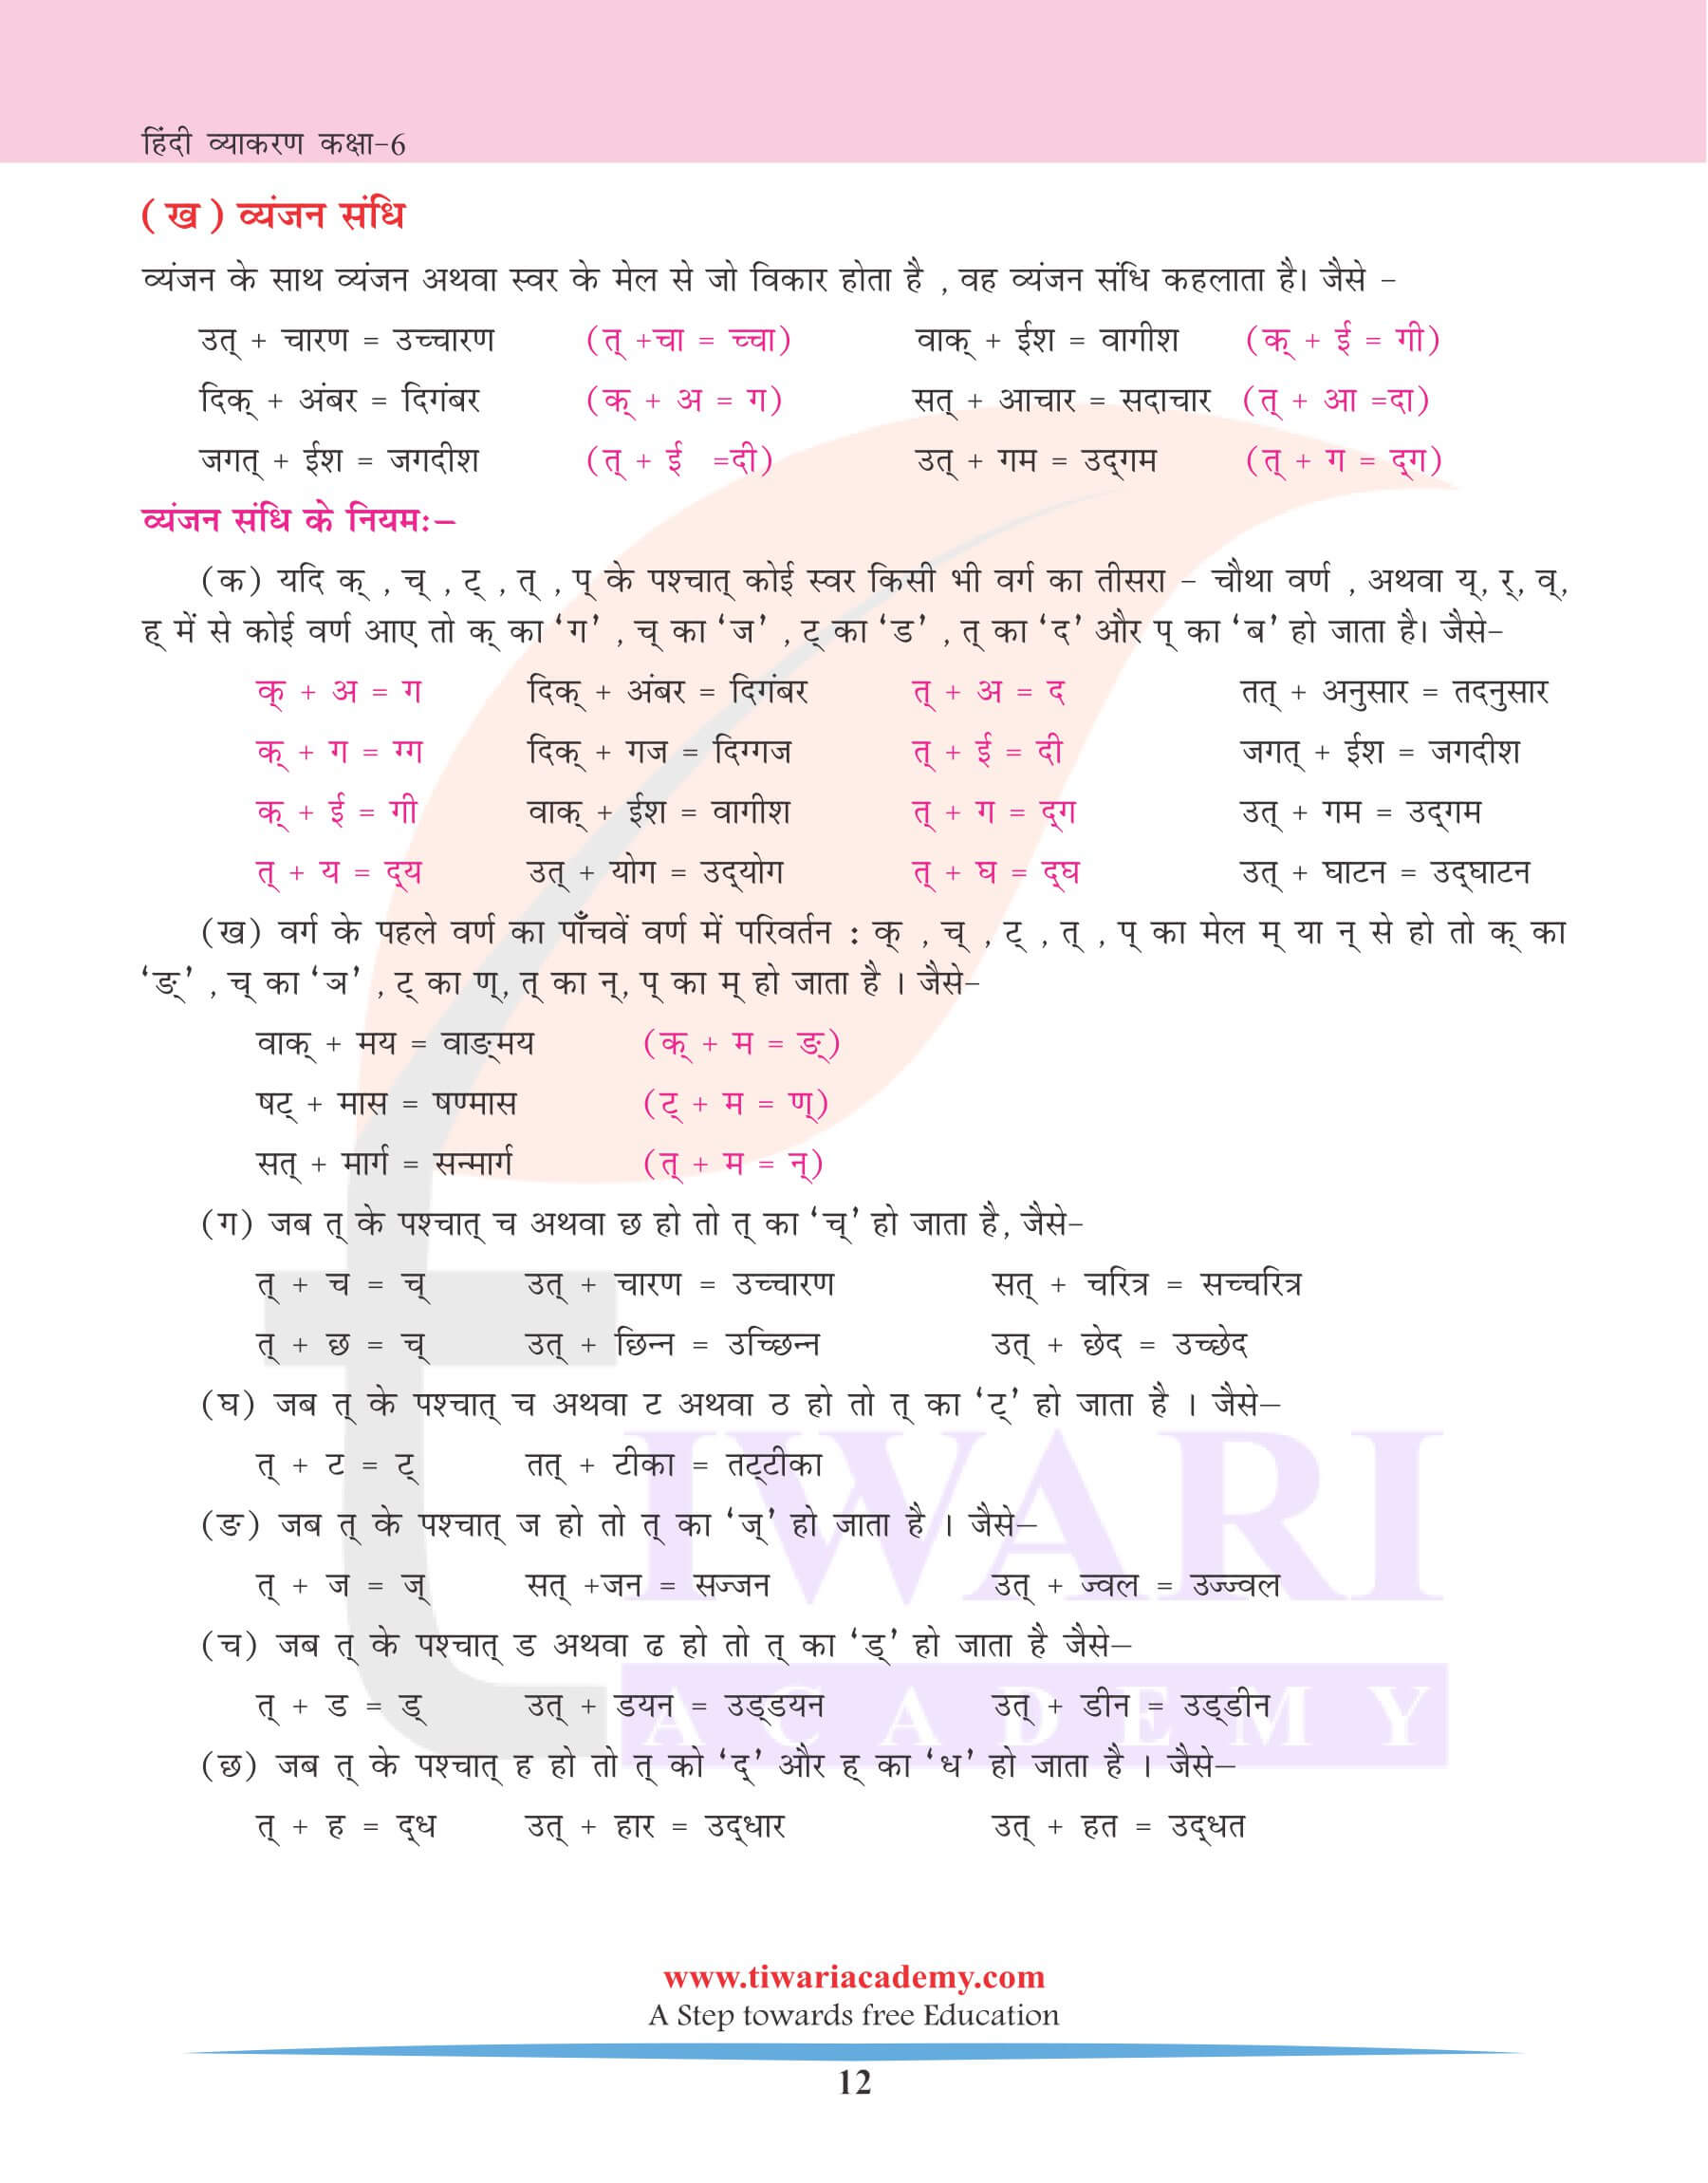 कक्षा 6 हिंदी व्याकरण अध्याय 3 संधि के उदाहरण